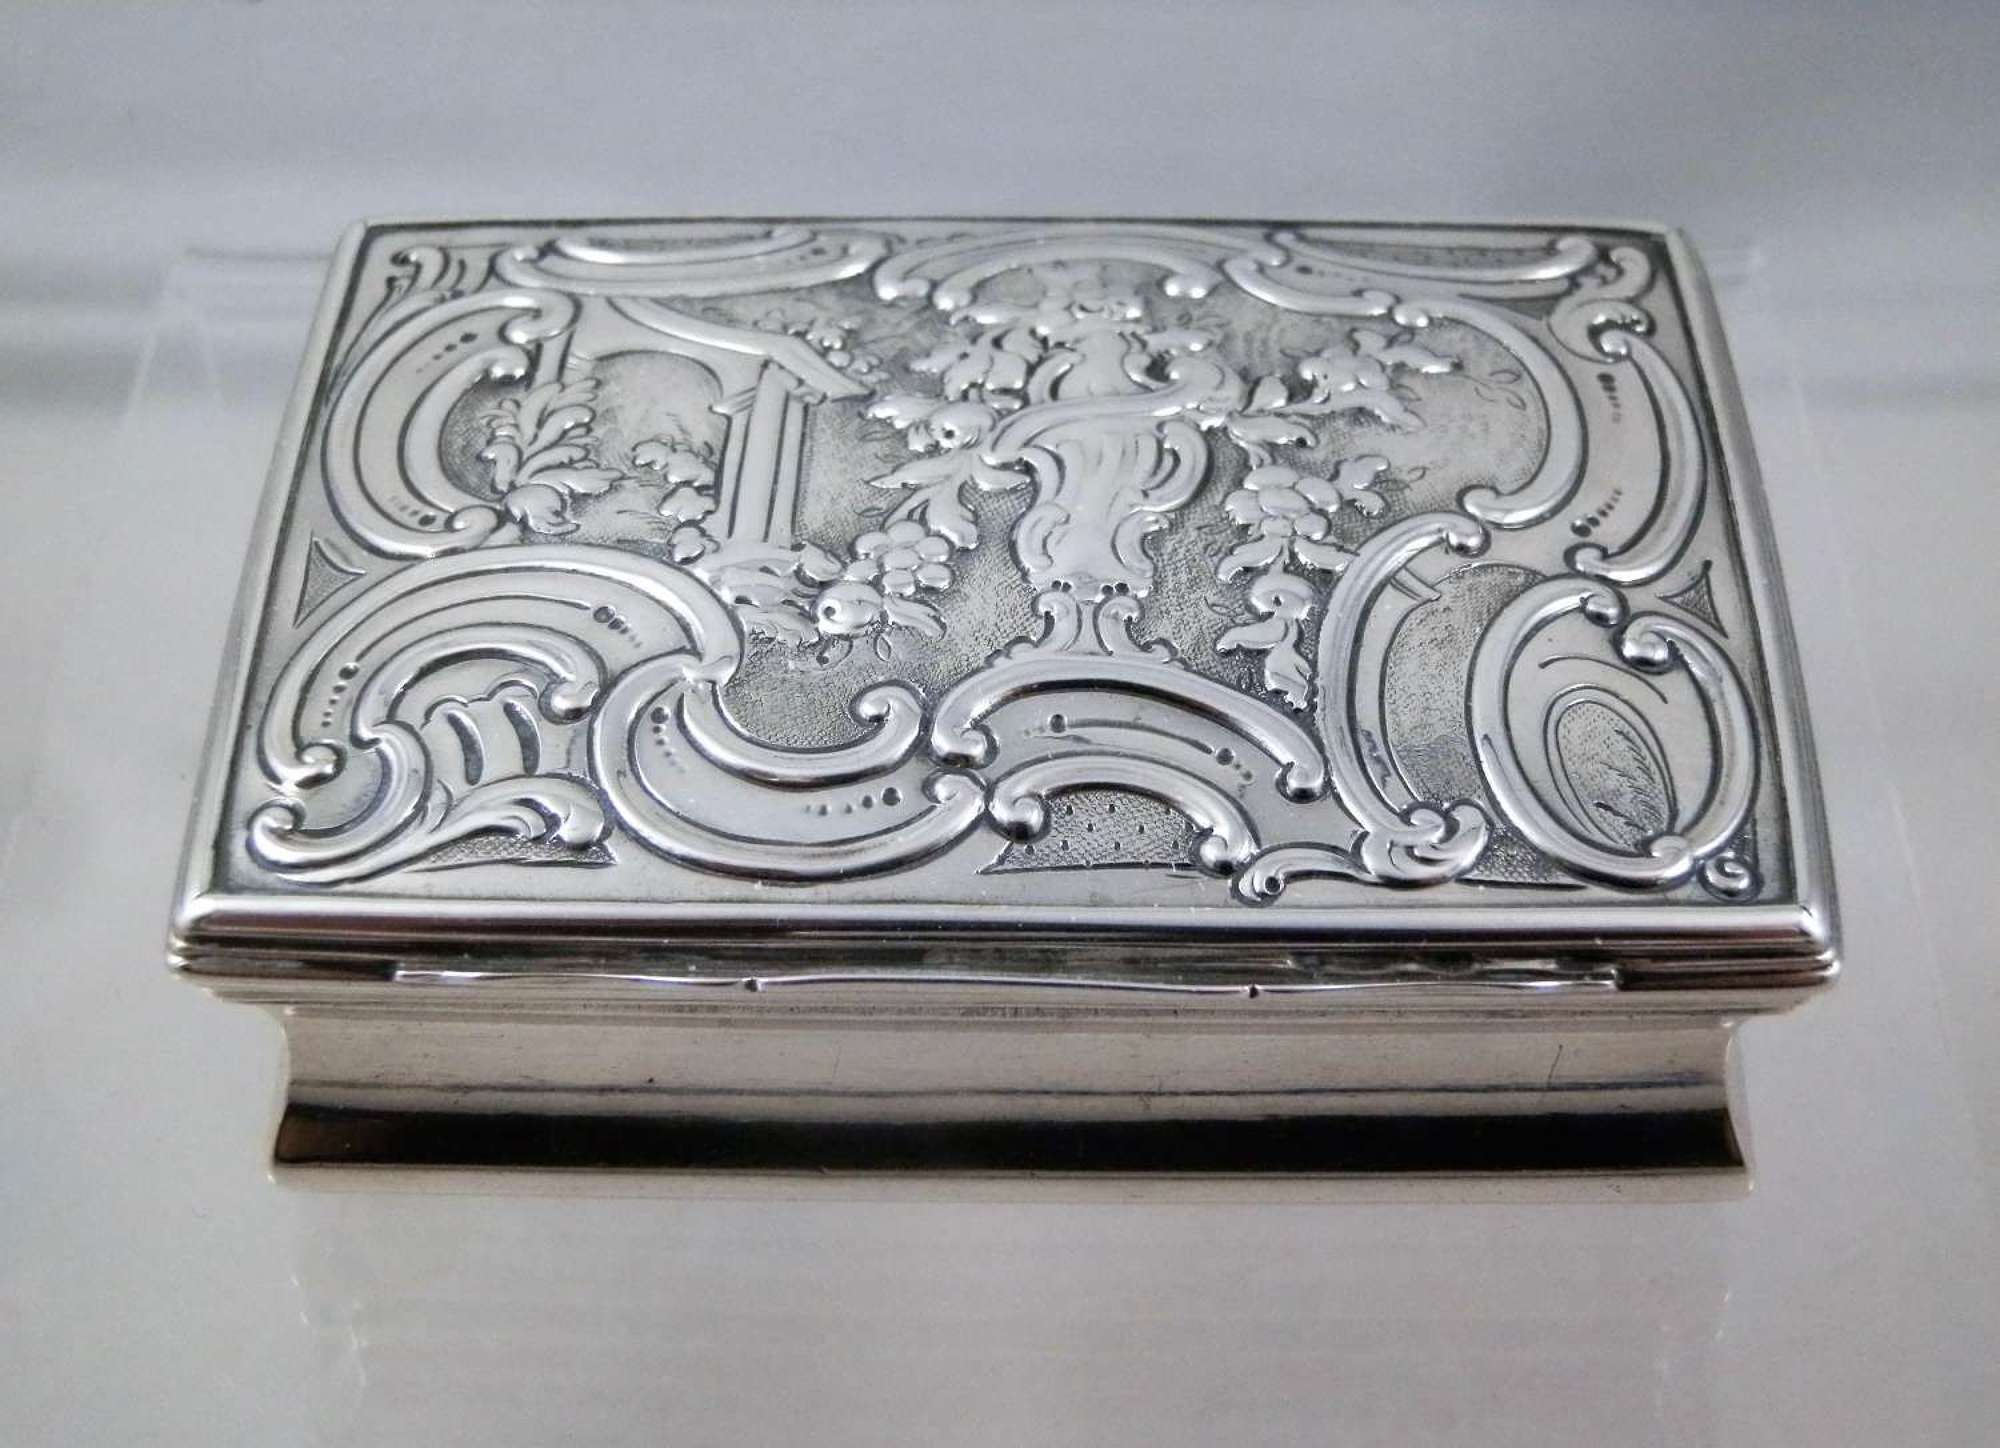 George III silver table snuff box, London 1760